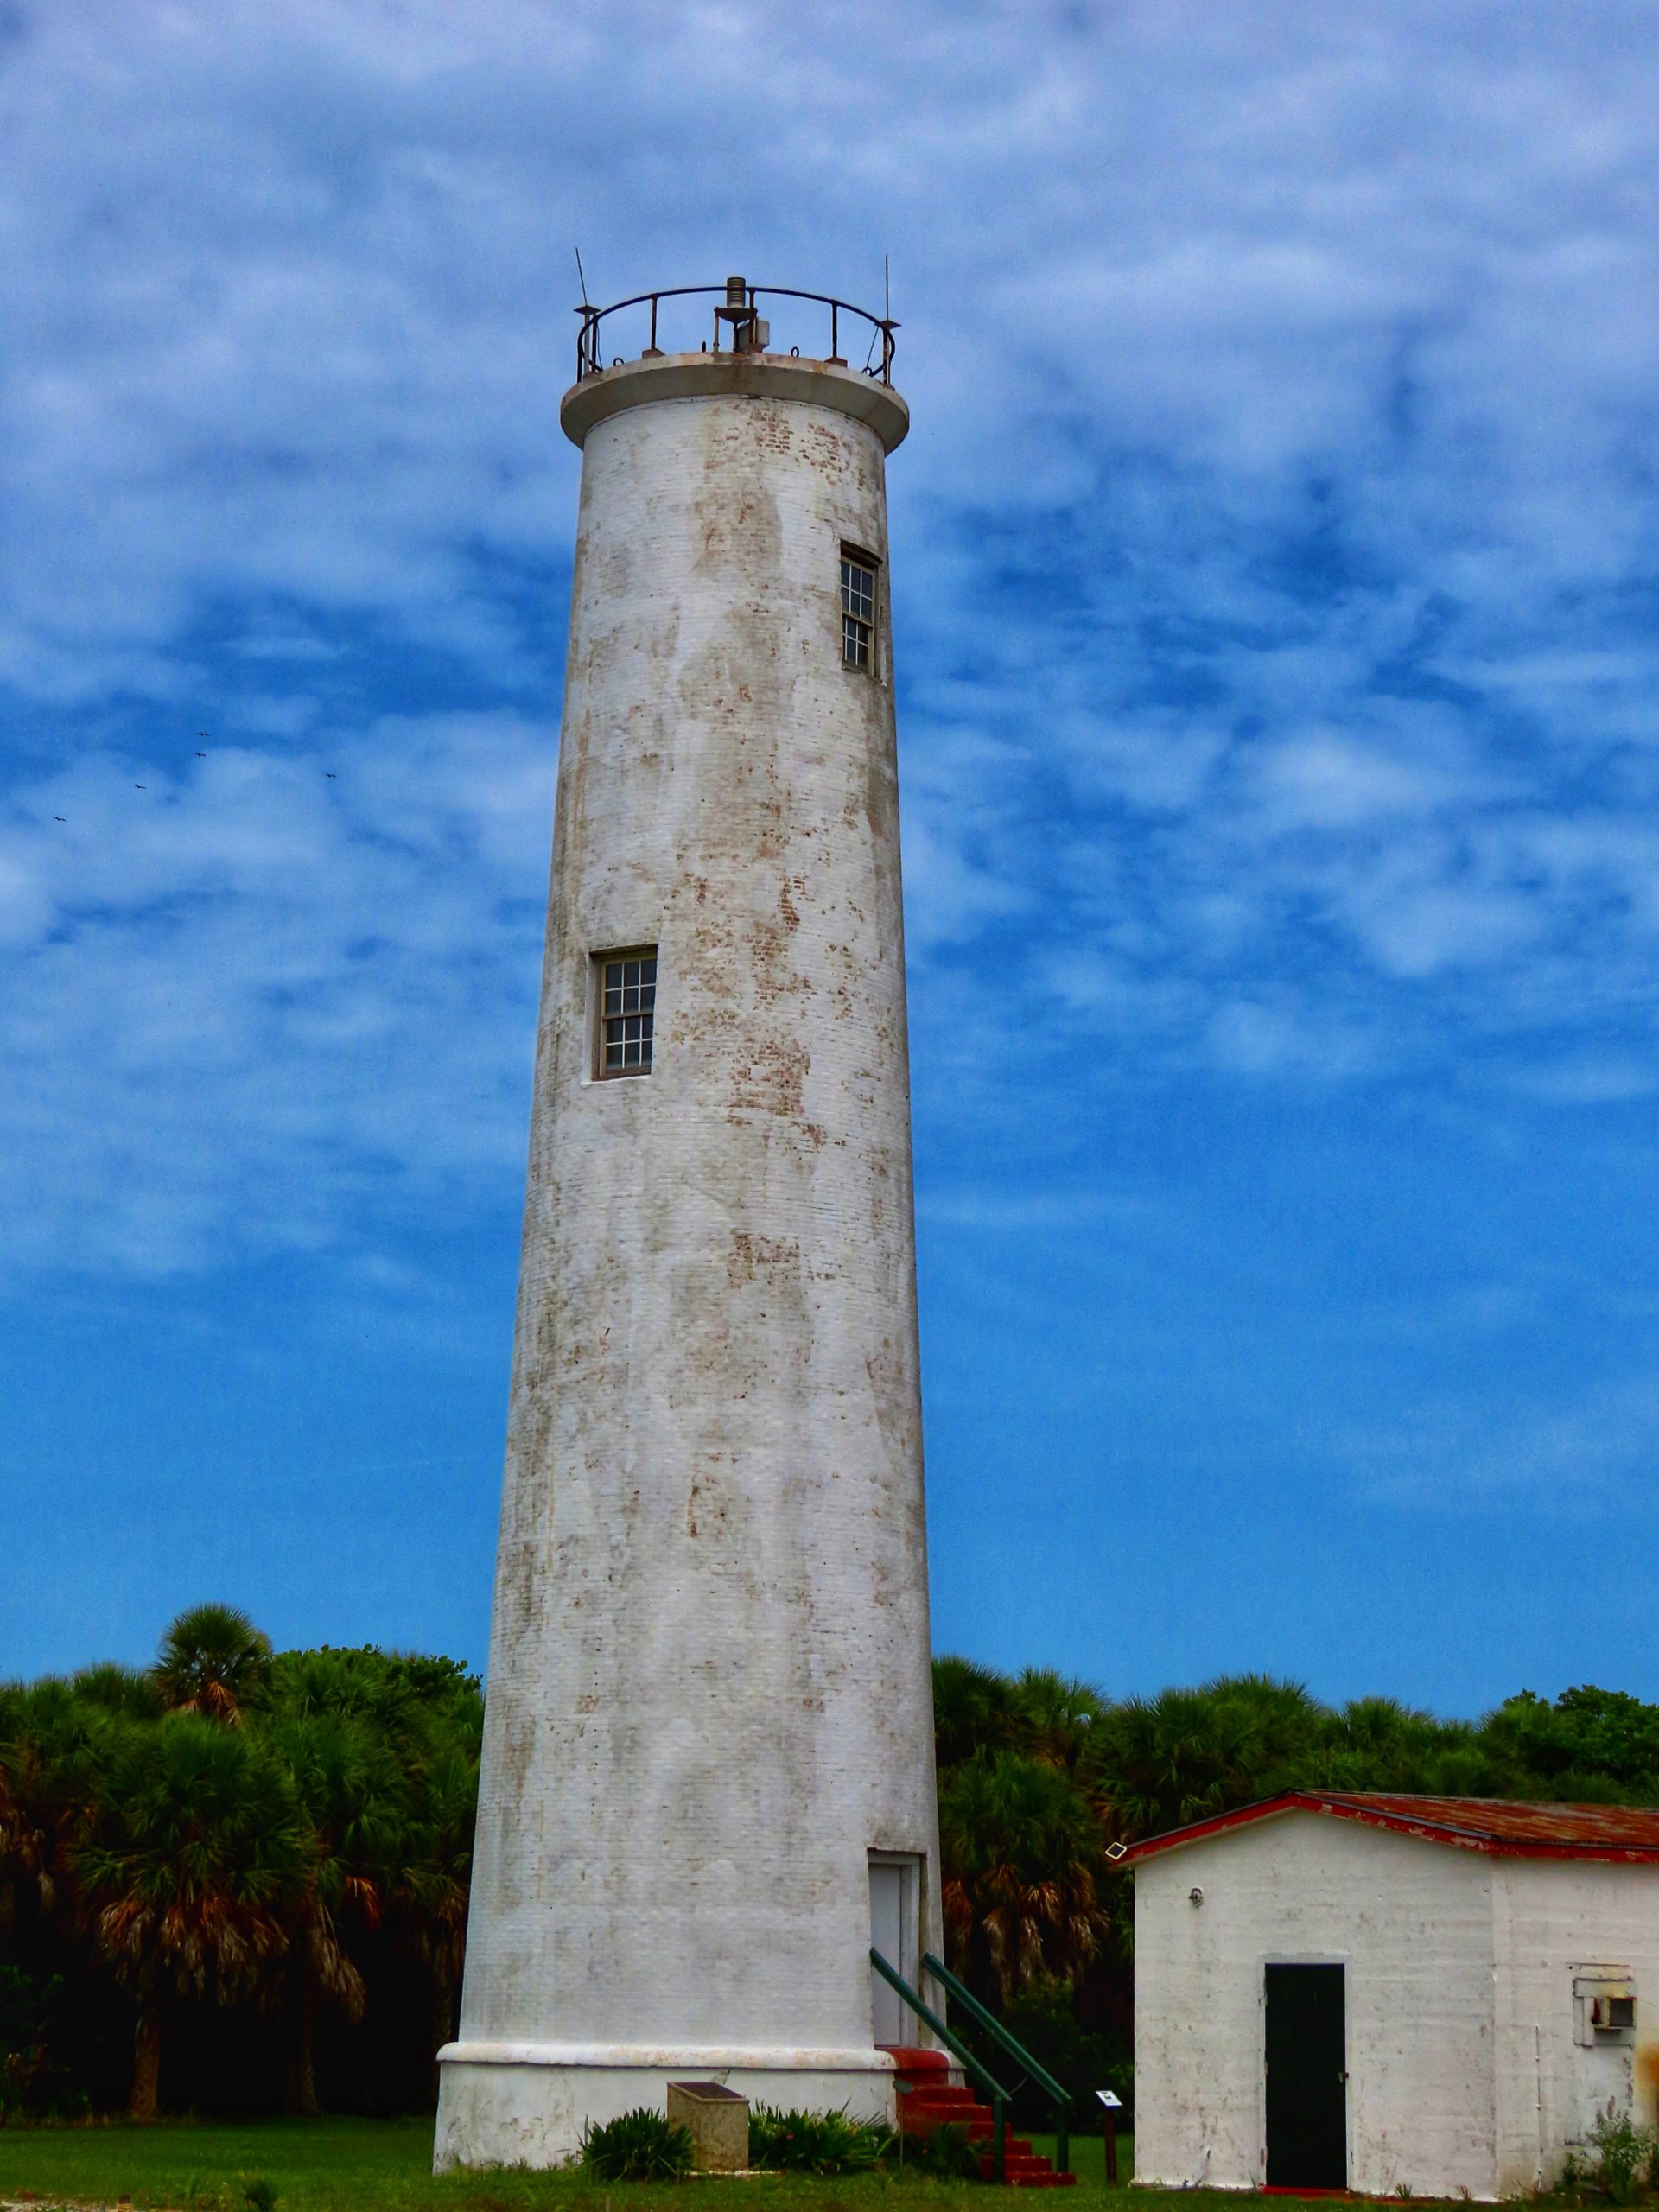 Egmont Key Lighthouse